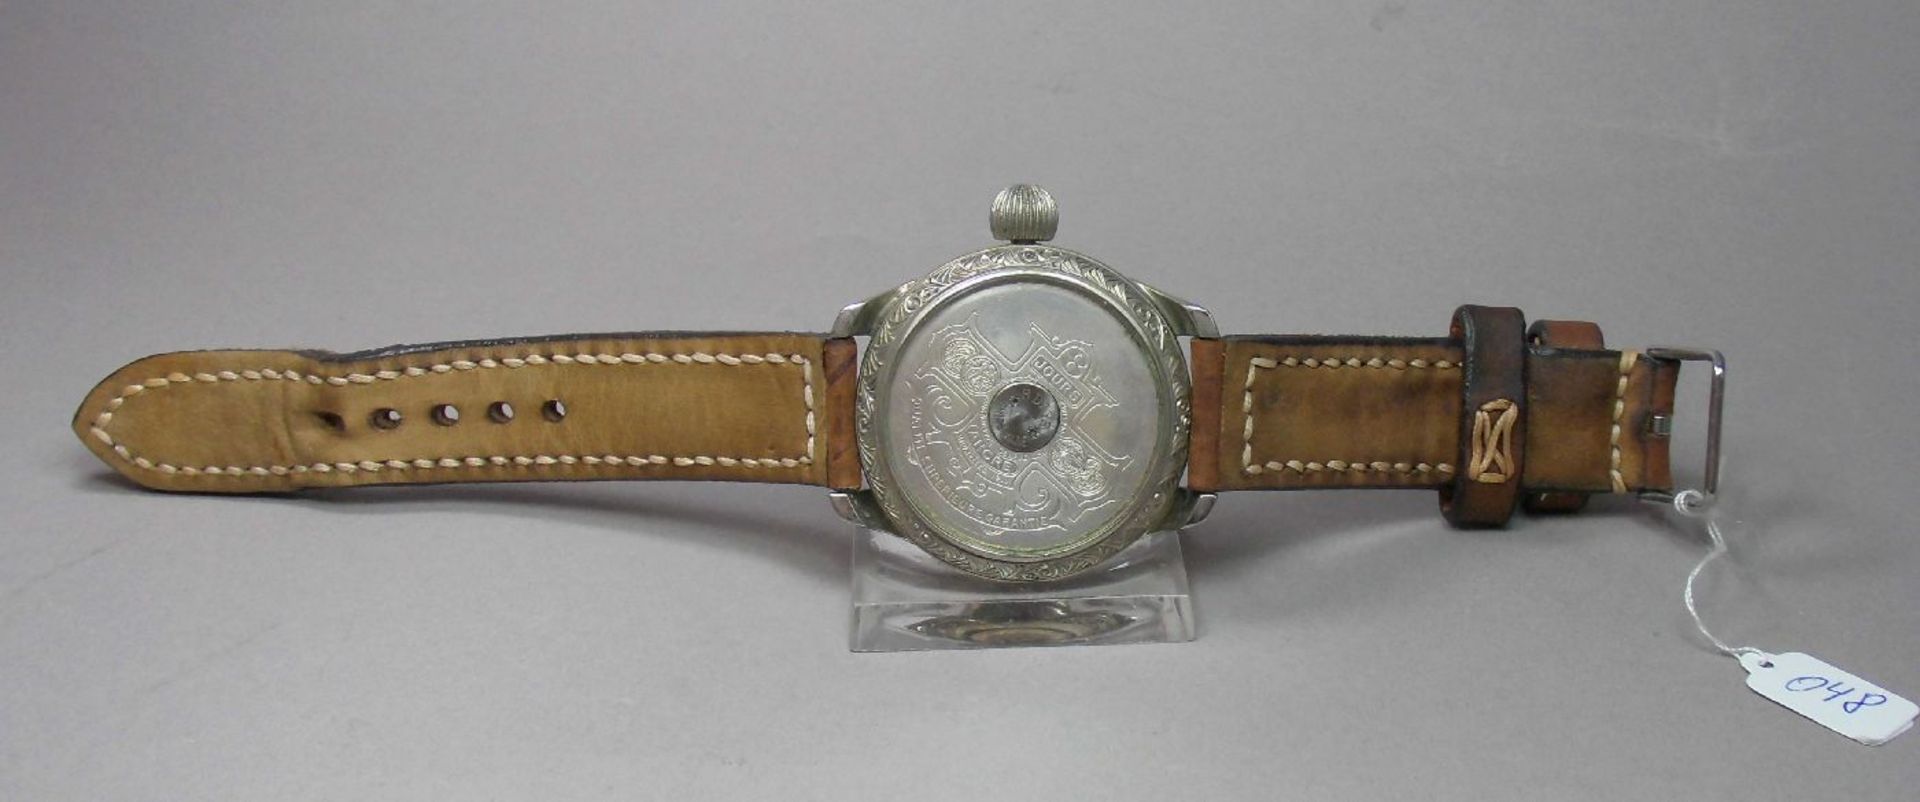 ARMBANDUHR, gearbeitet aus einer Taschenuhr / Mariage / wristwatch, 20. Jh., Handaufzug (Krone). - Image 5 of 7